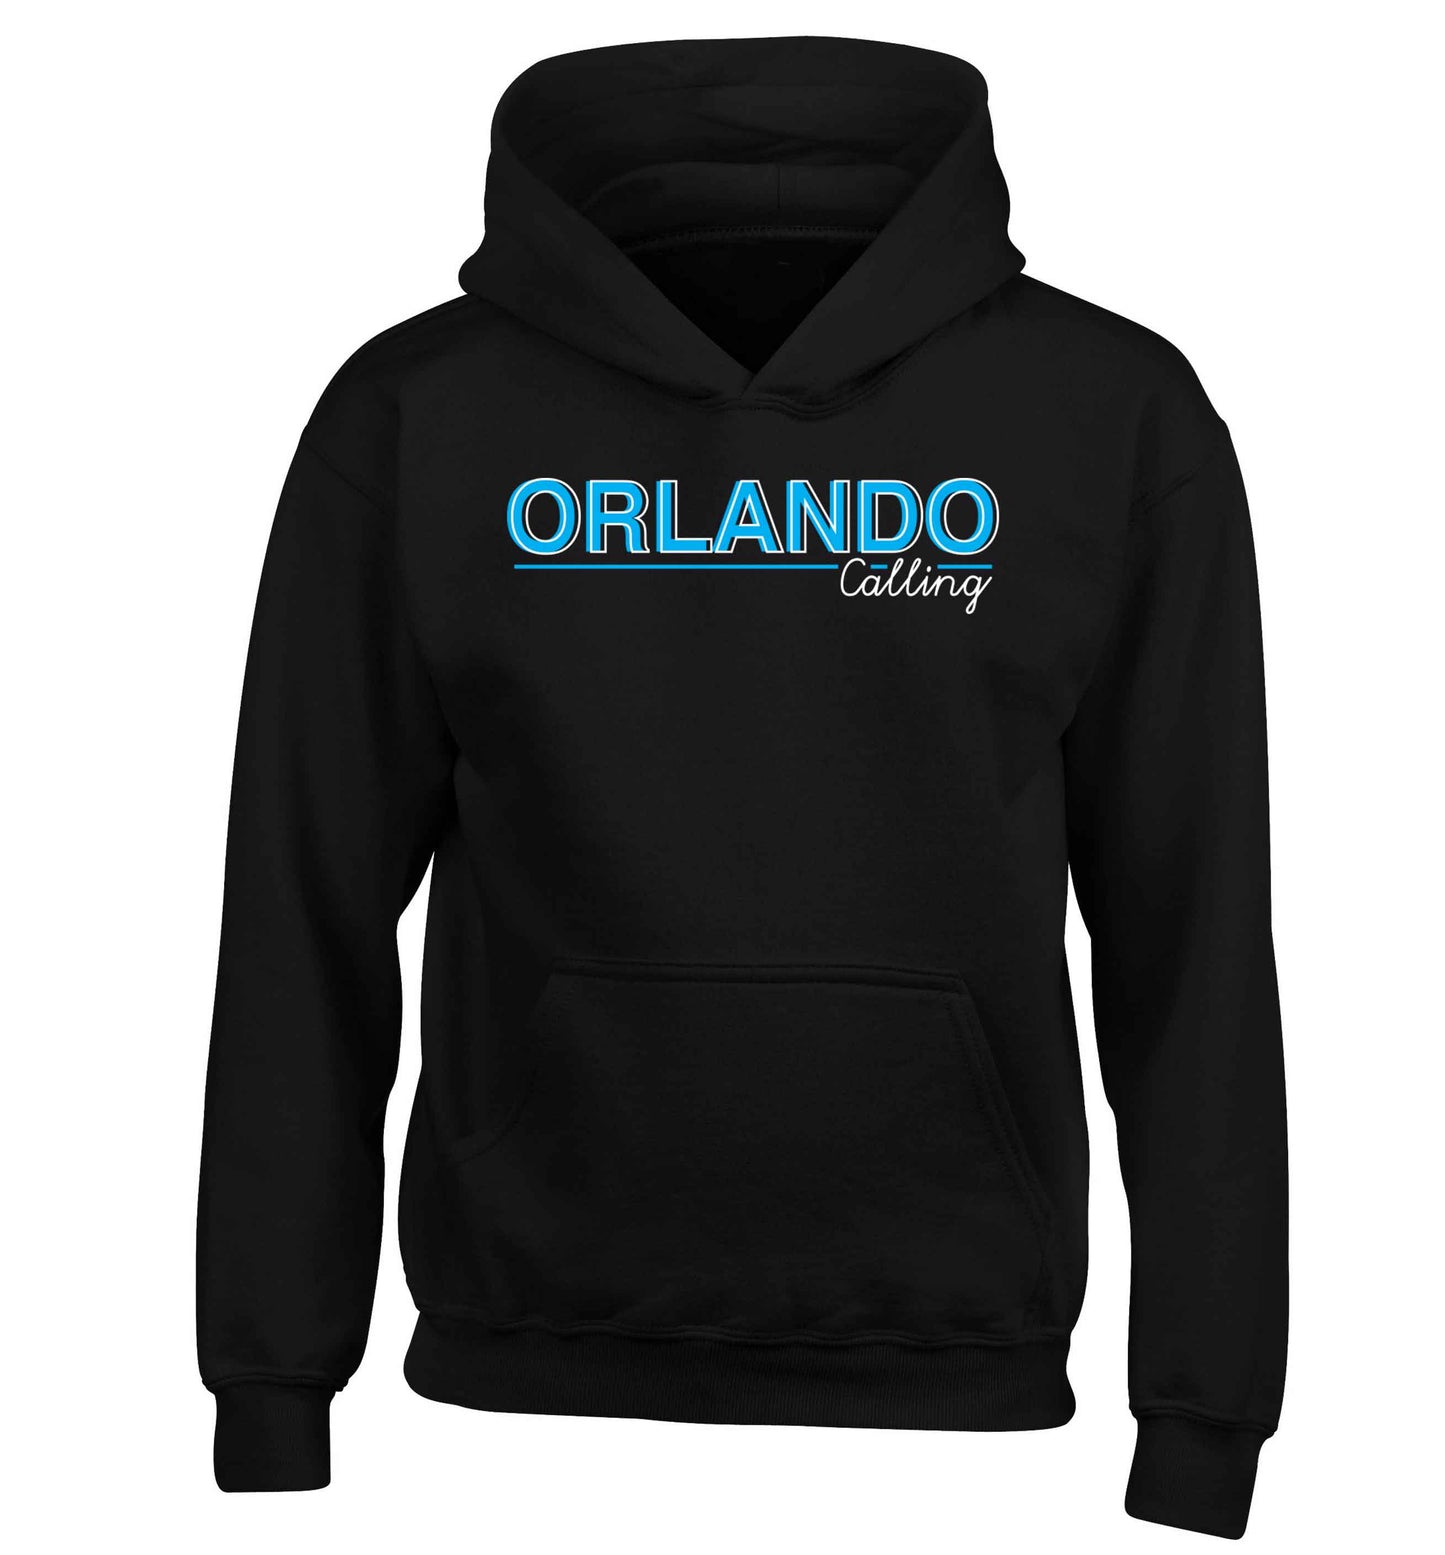 Orlando calling children's black hoodie 12-13 Years